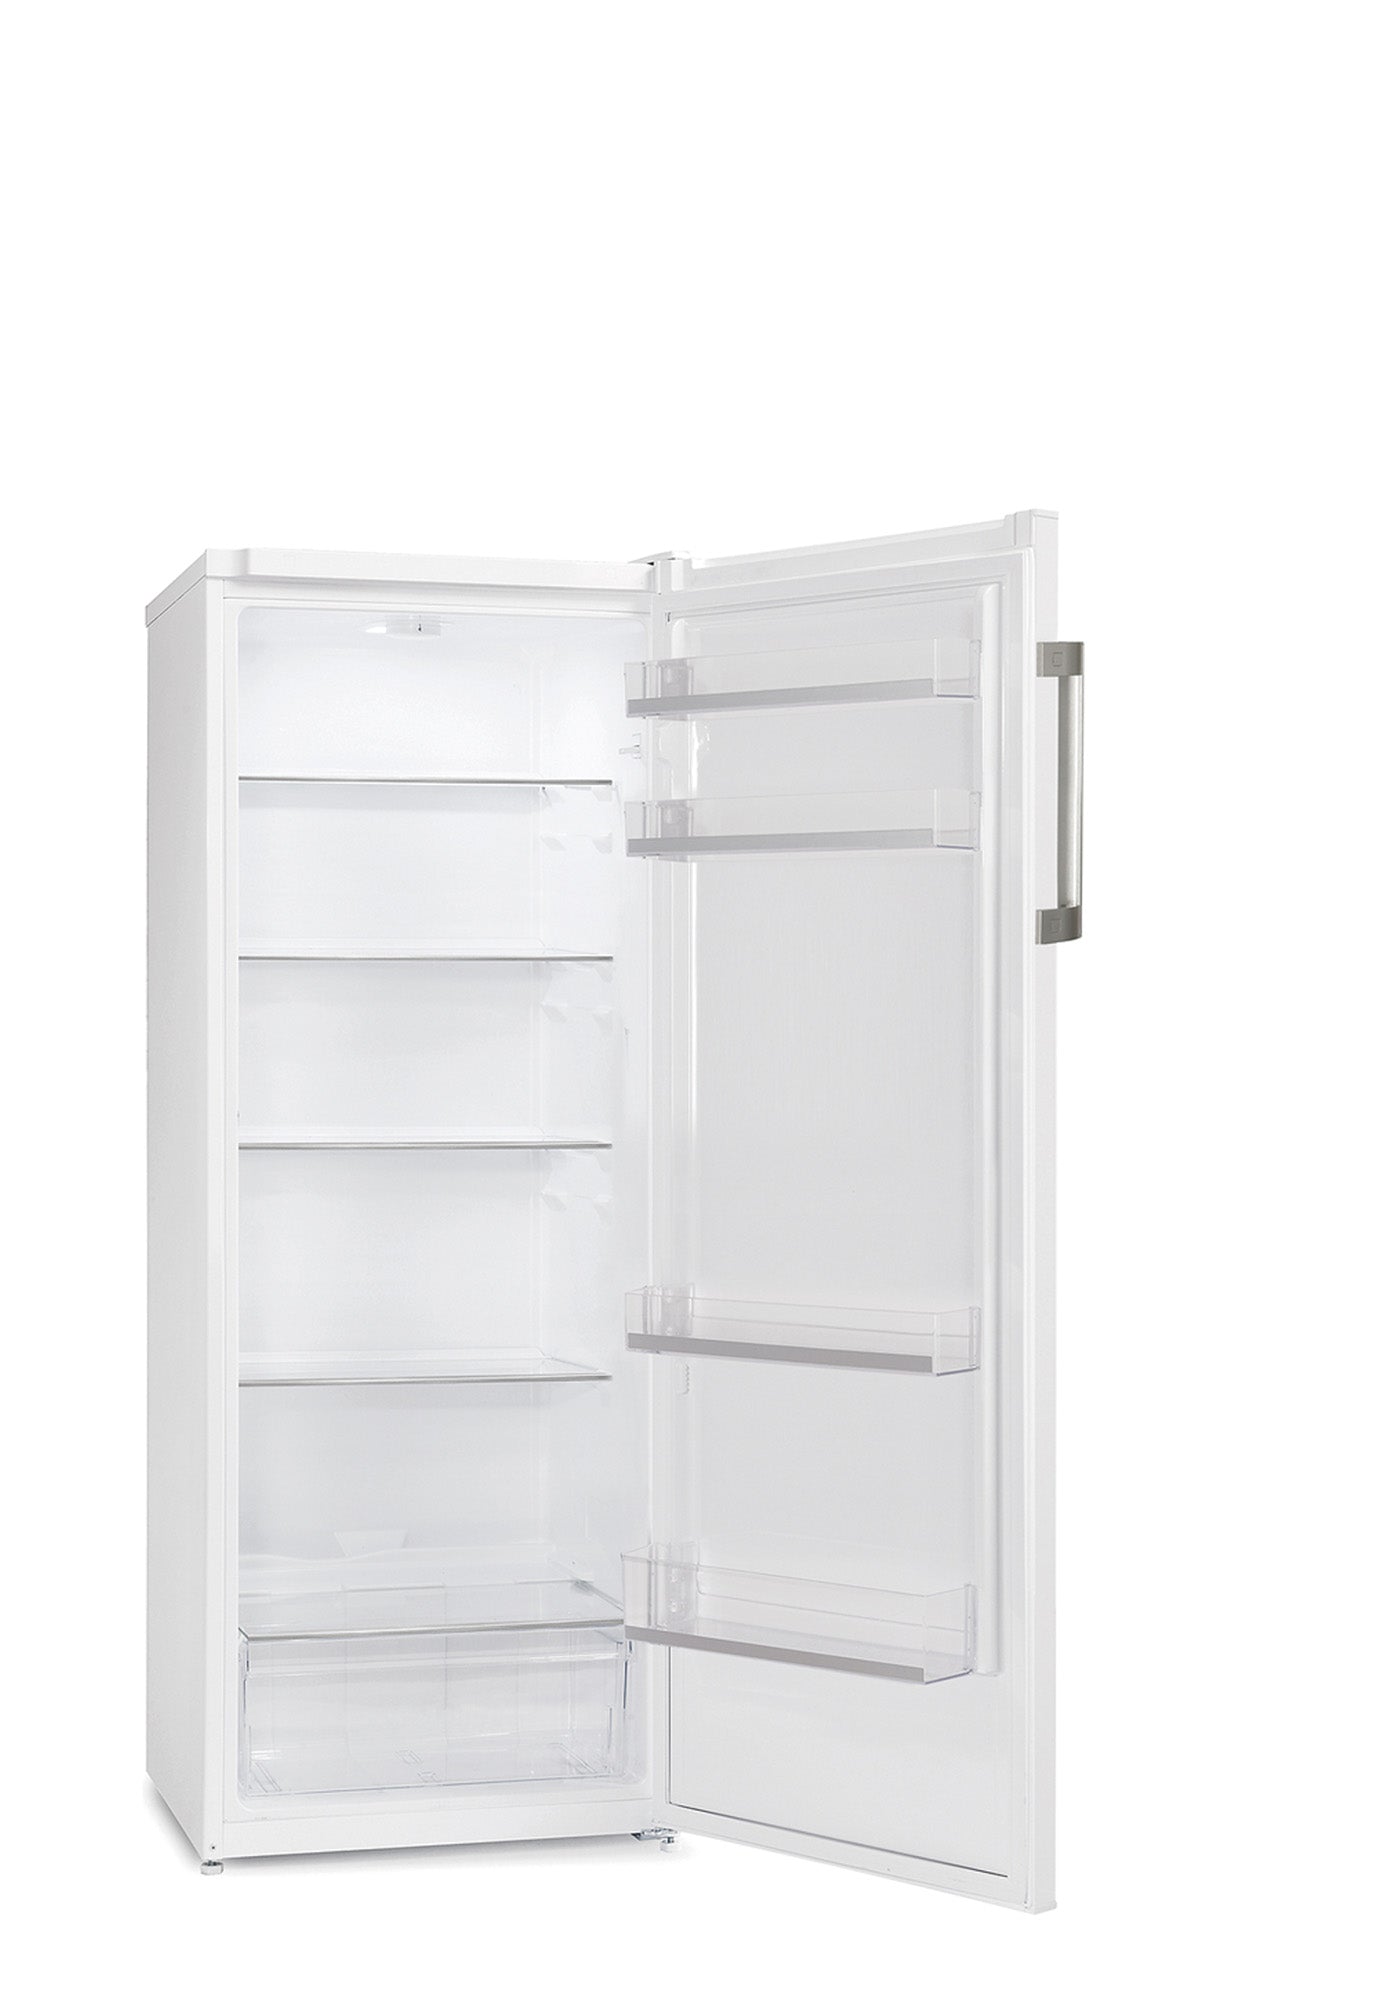 Gram KS 341454 - Fritstående køleskab